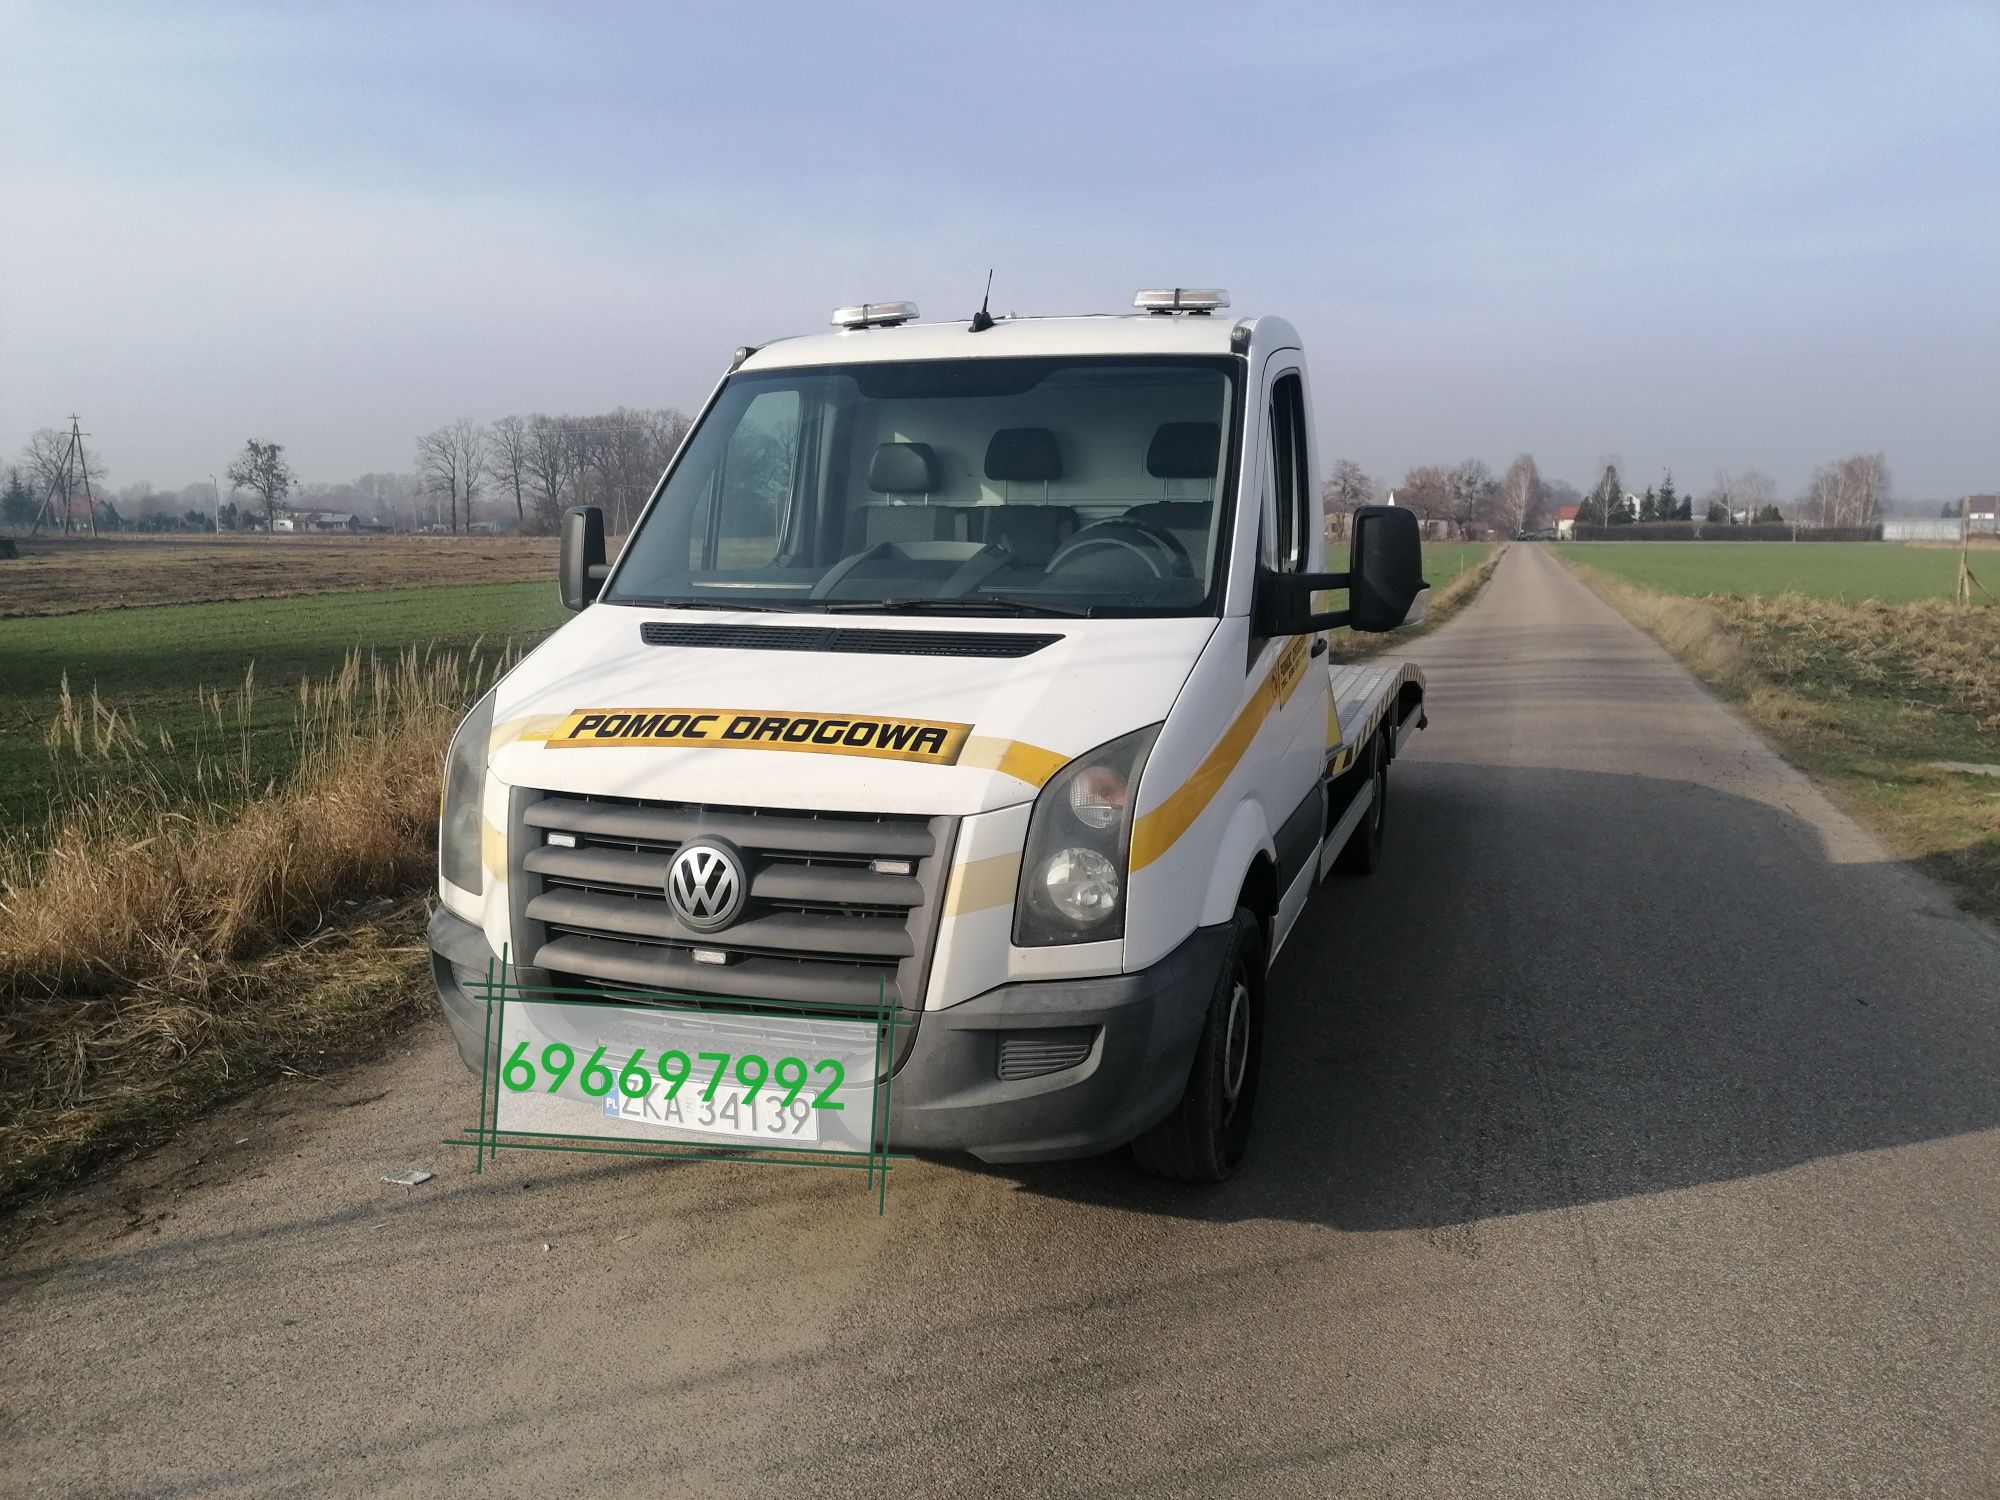 Pomoc Drogowa Autolaweta Transport Wynajem Przyczepka samochodowa